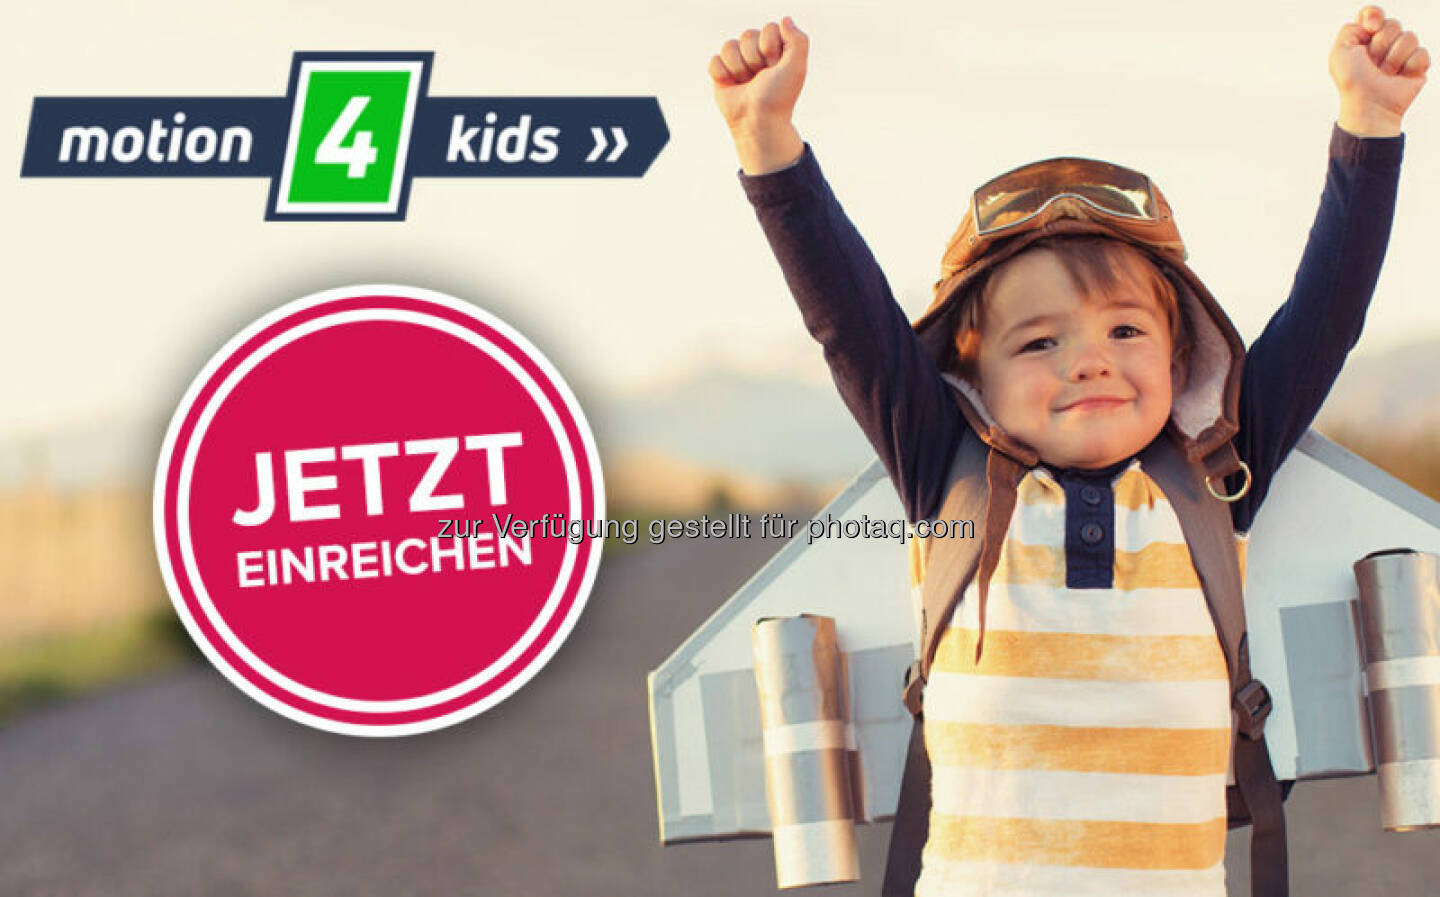 motion 4 kids (Bild: österreichische Sporthilfe)